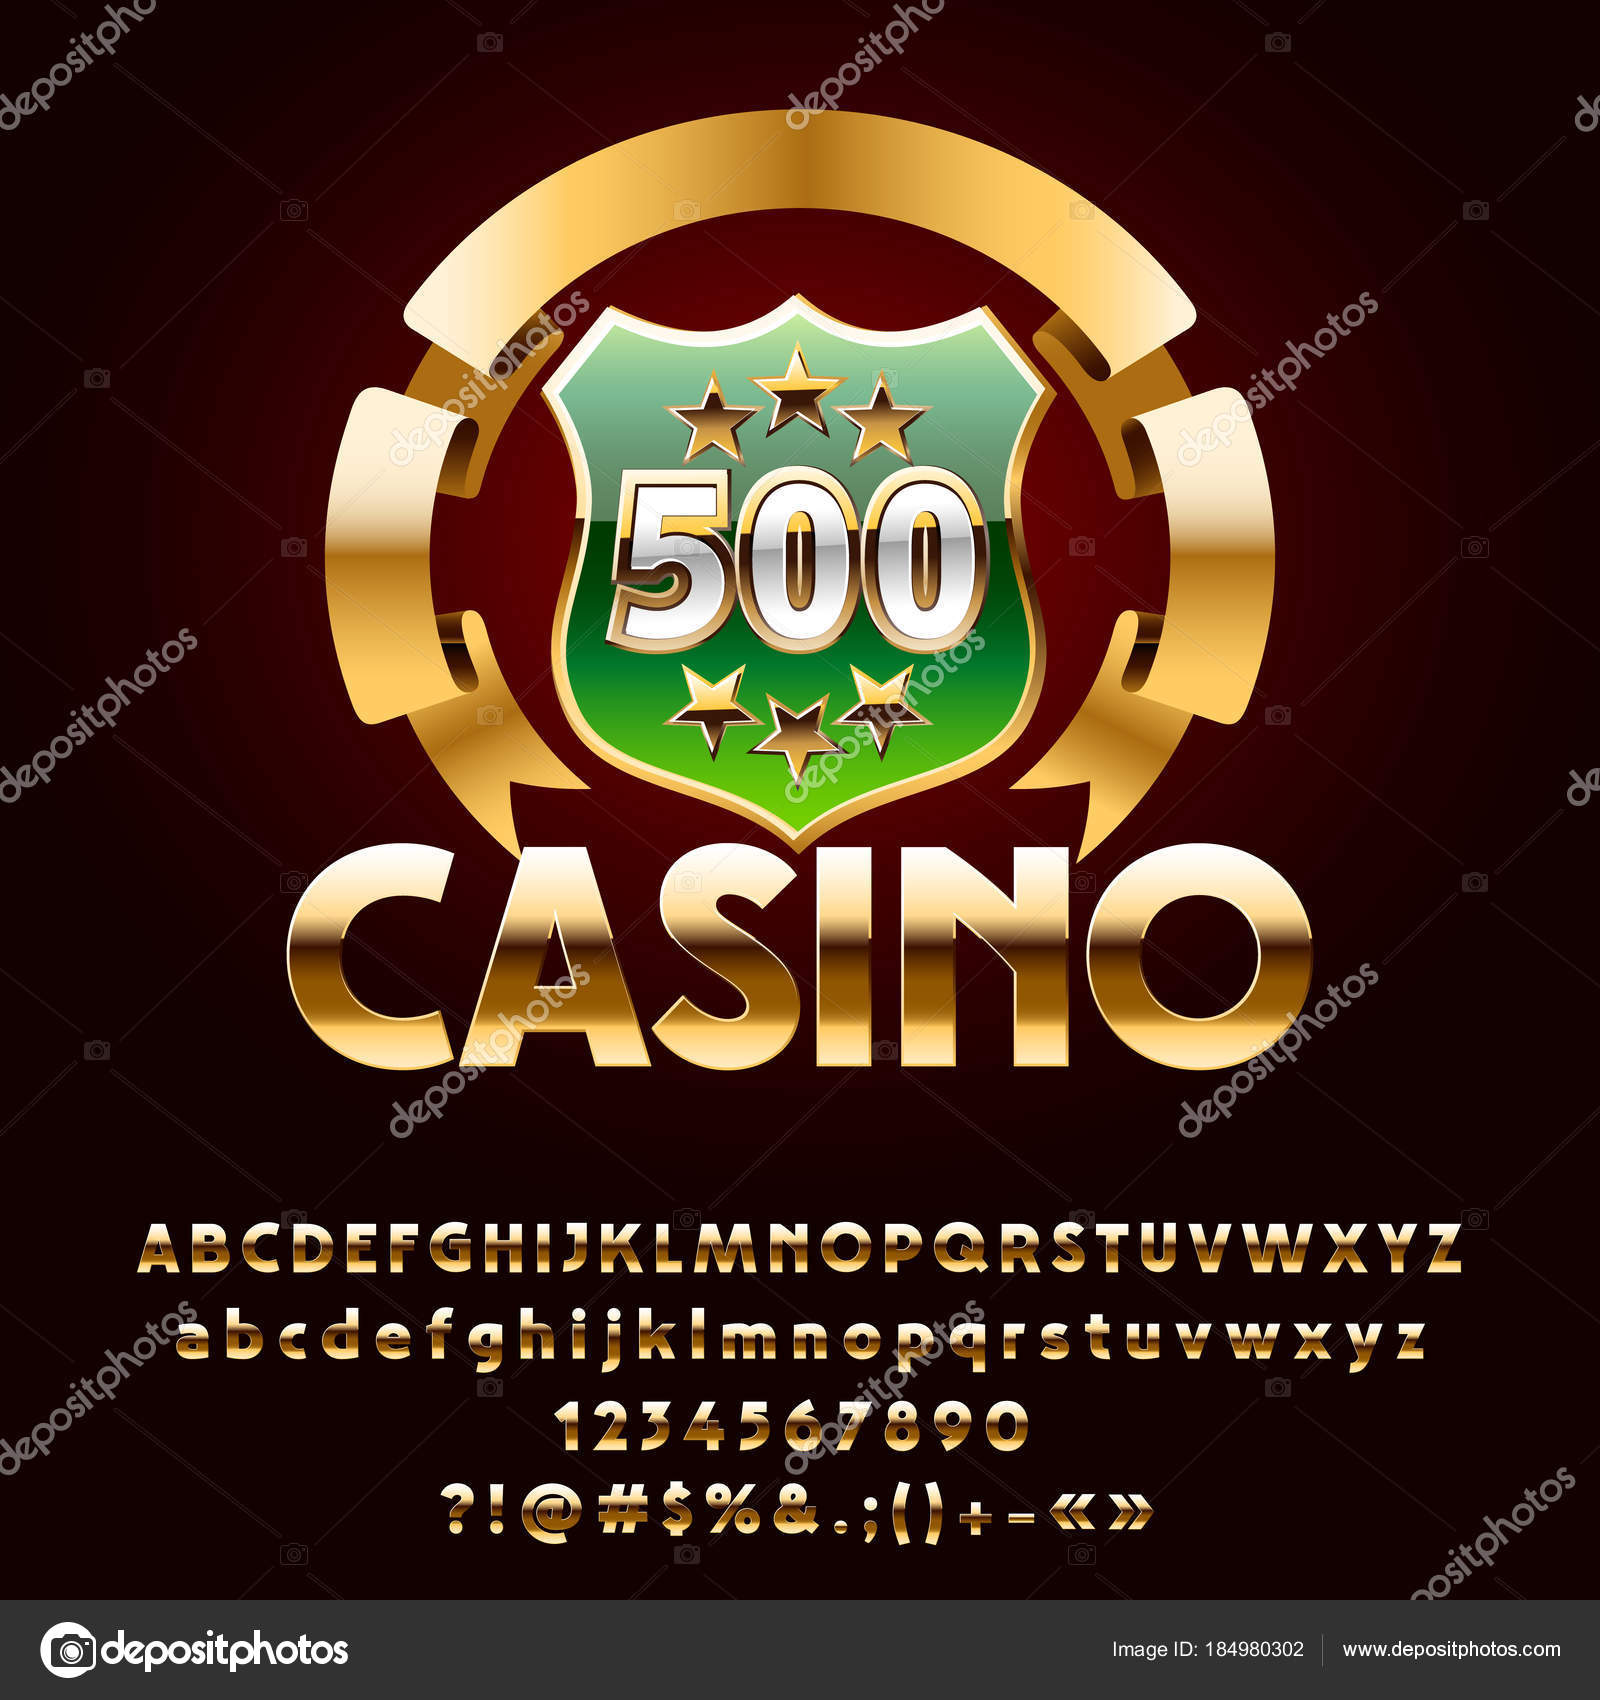 Casino de Mega Símbolos